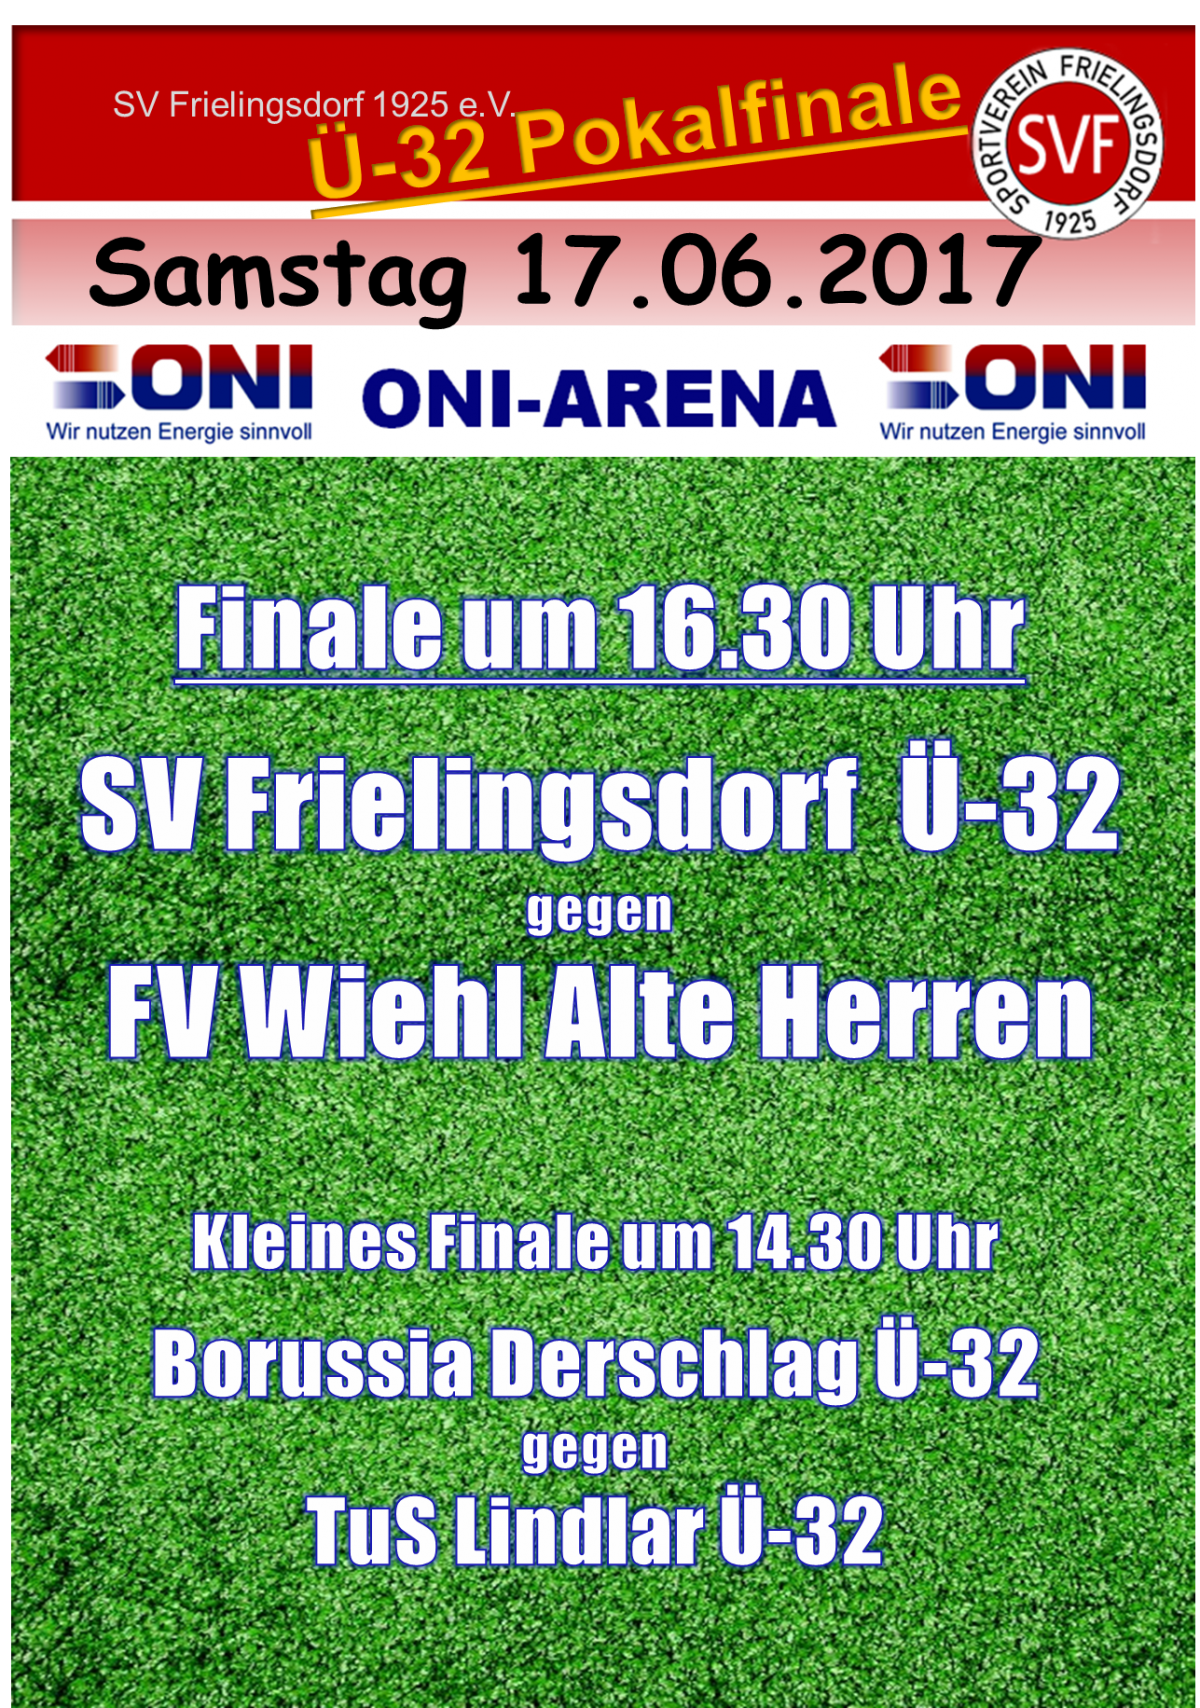 Ü-32 Pokalfinale in Frielingsdorf in der ONI Arena